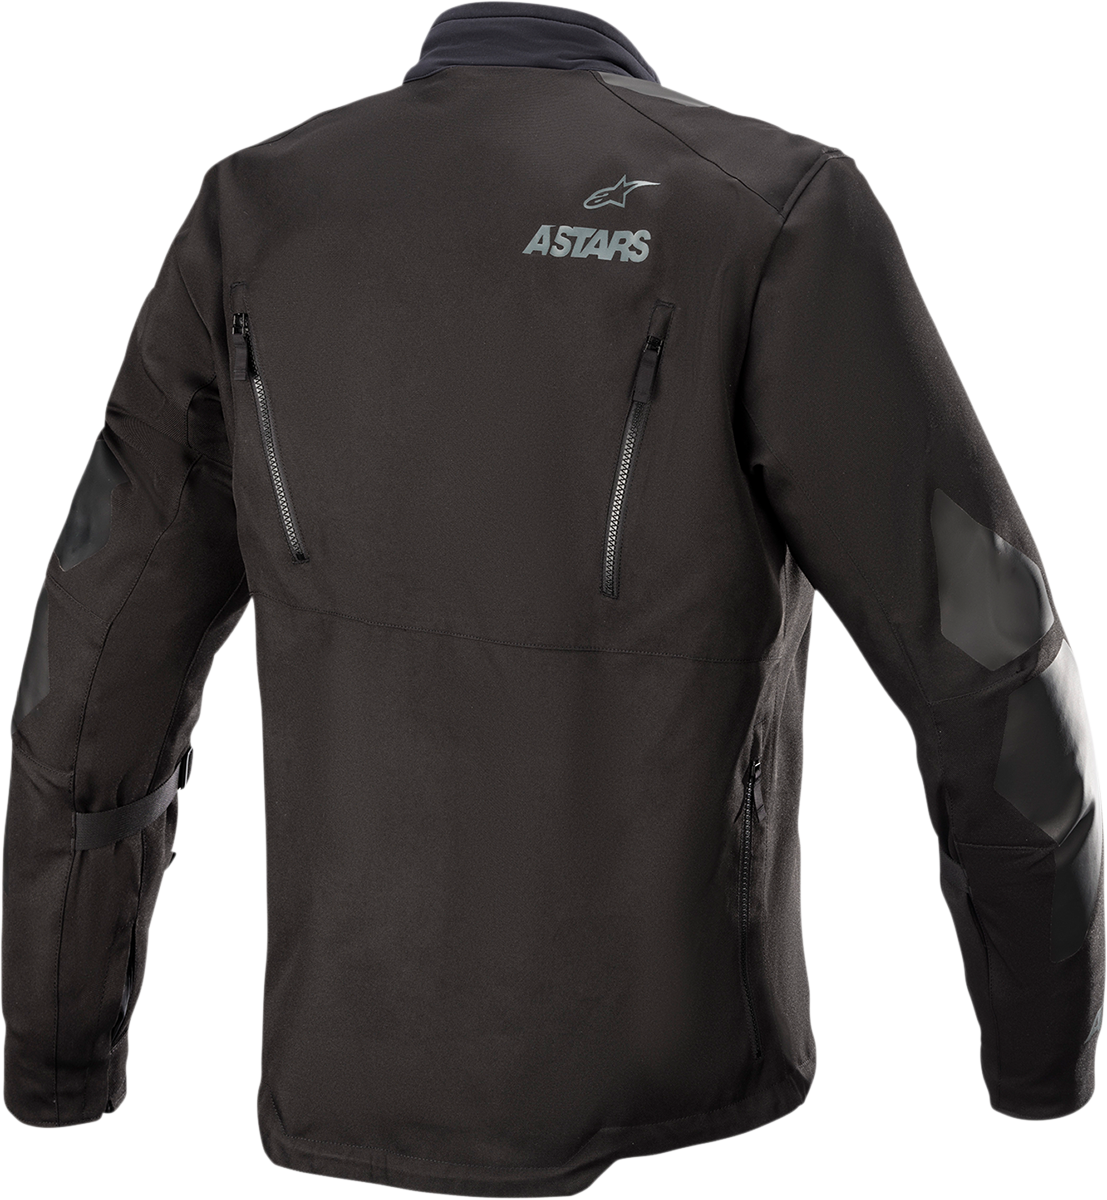 ALPINESTARS Venture XT Jacket - Black - XL 3303022-1100-XL